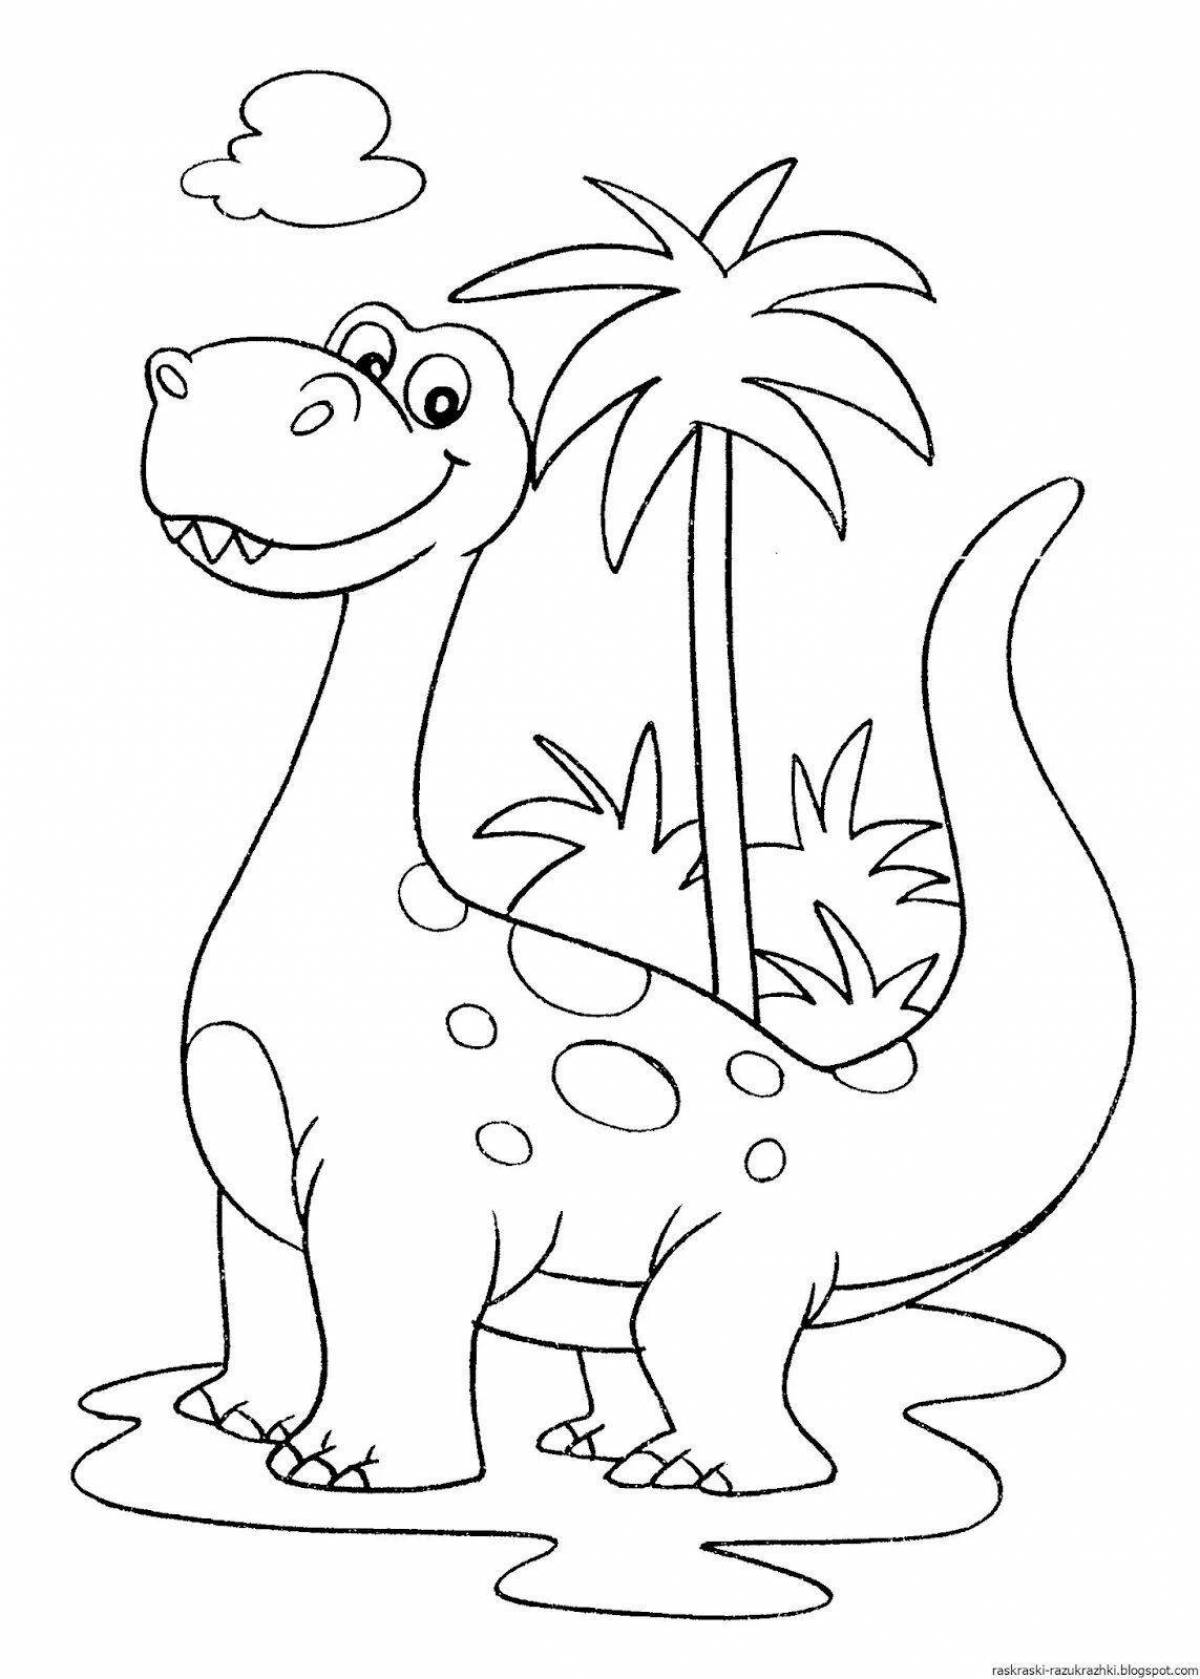 Веселая раскраска динозавров для детей